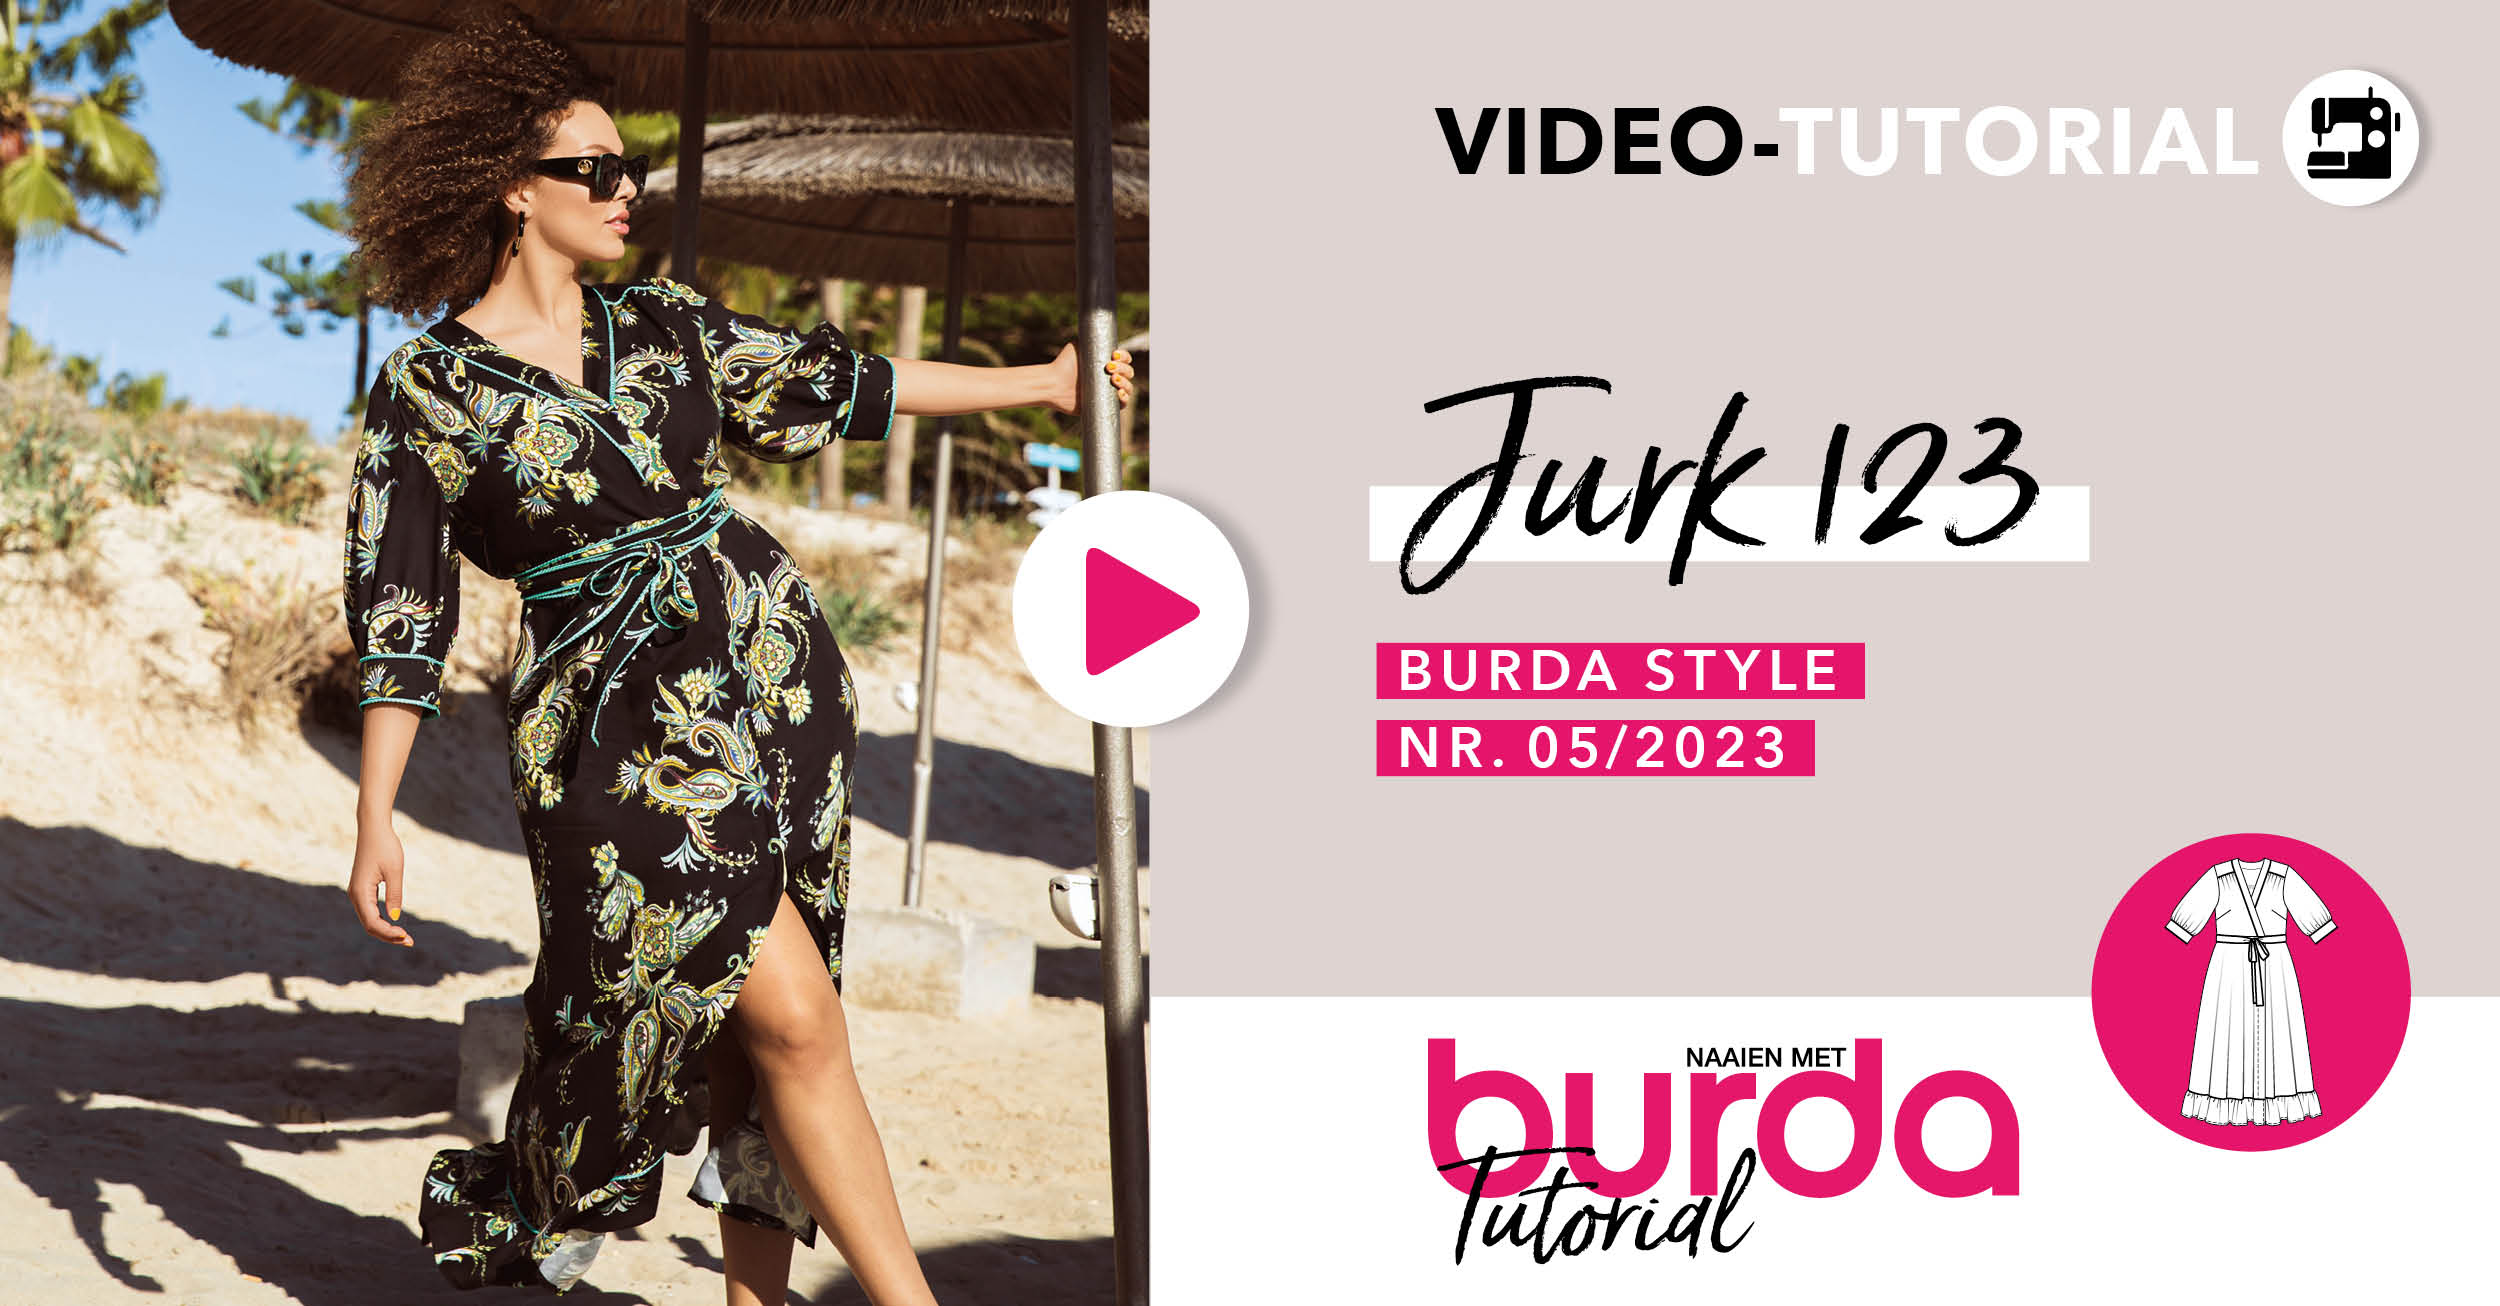 Video tutorial: jurk 123 - burda style mei 2023